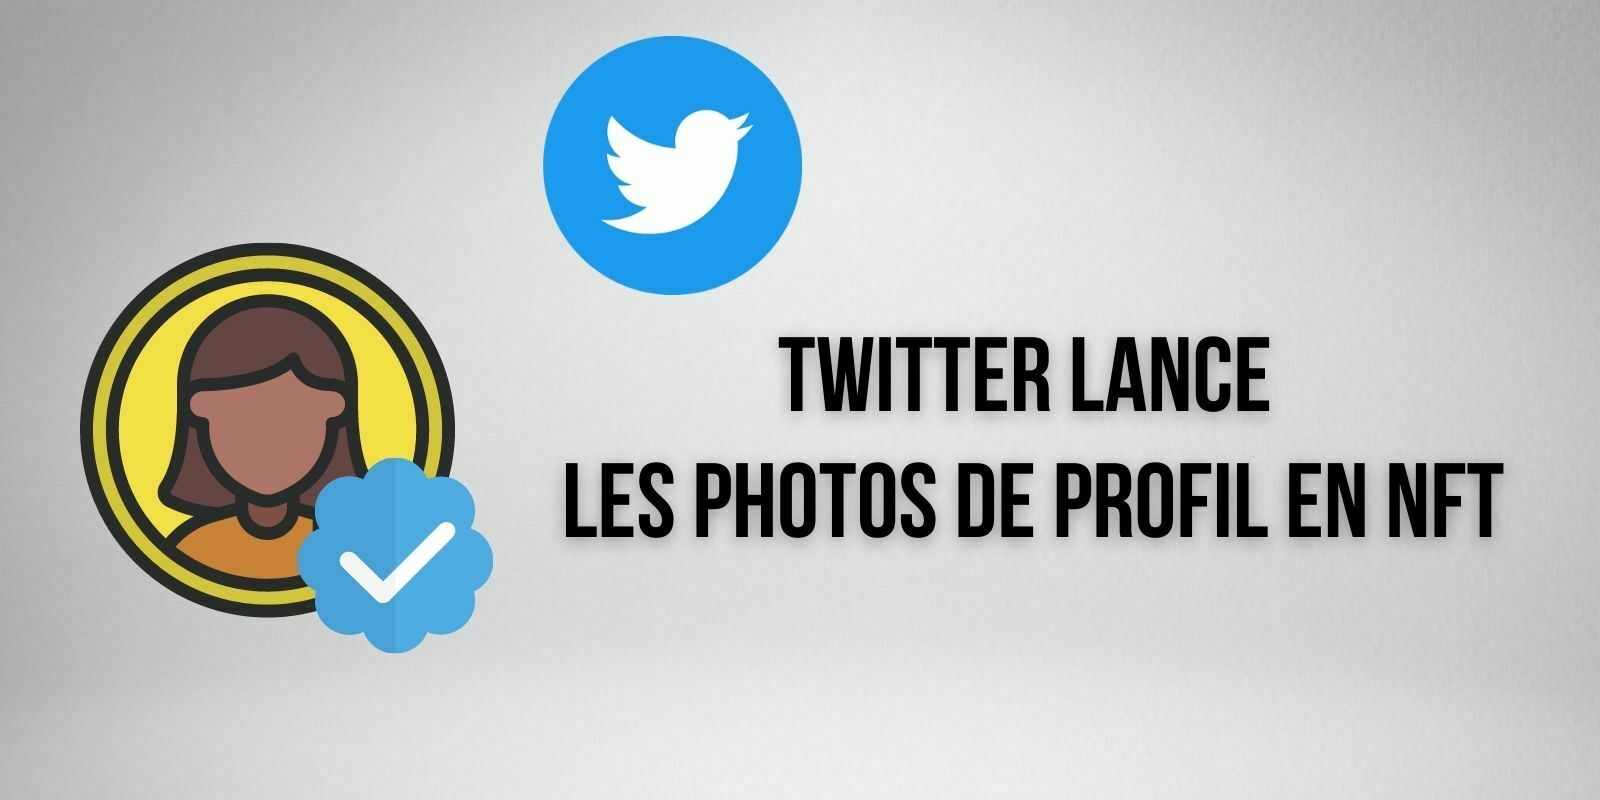 Twitter lance la vérification des photos de profil sous forme de NFT